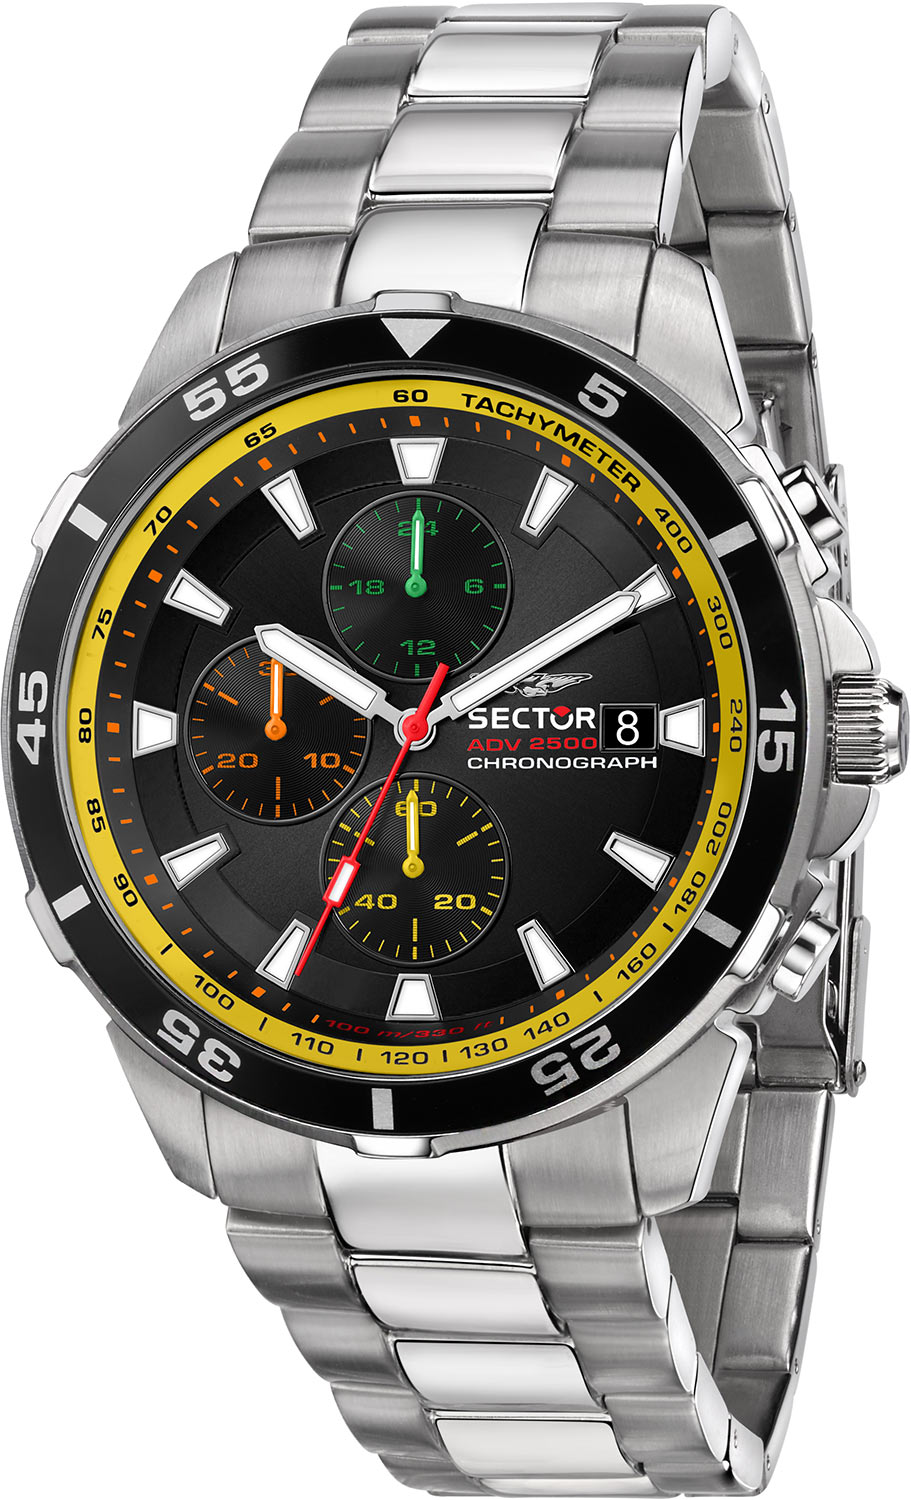 Наручные часы Sector R3273643006 с хронографом